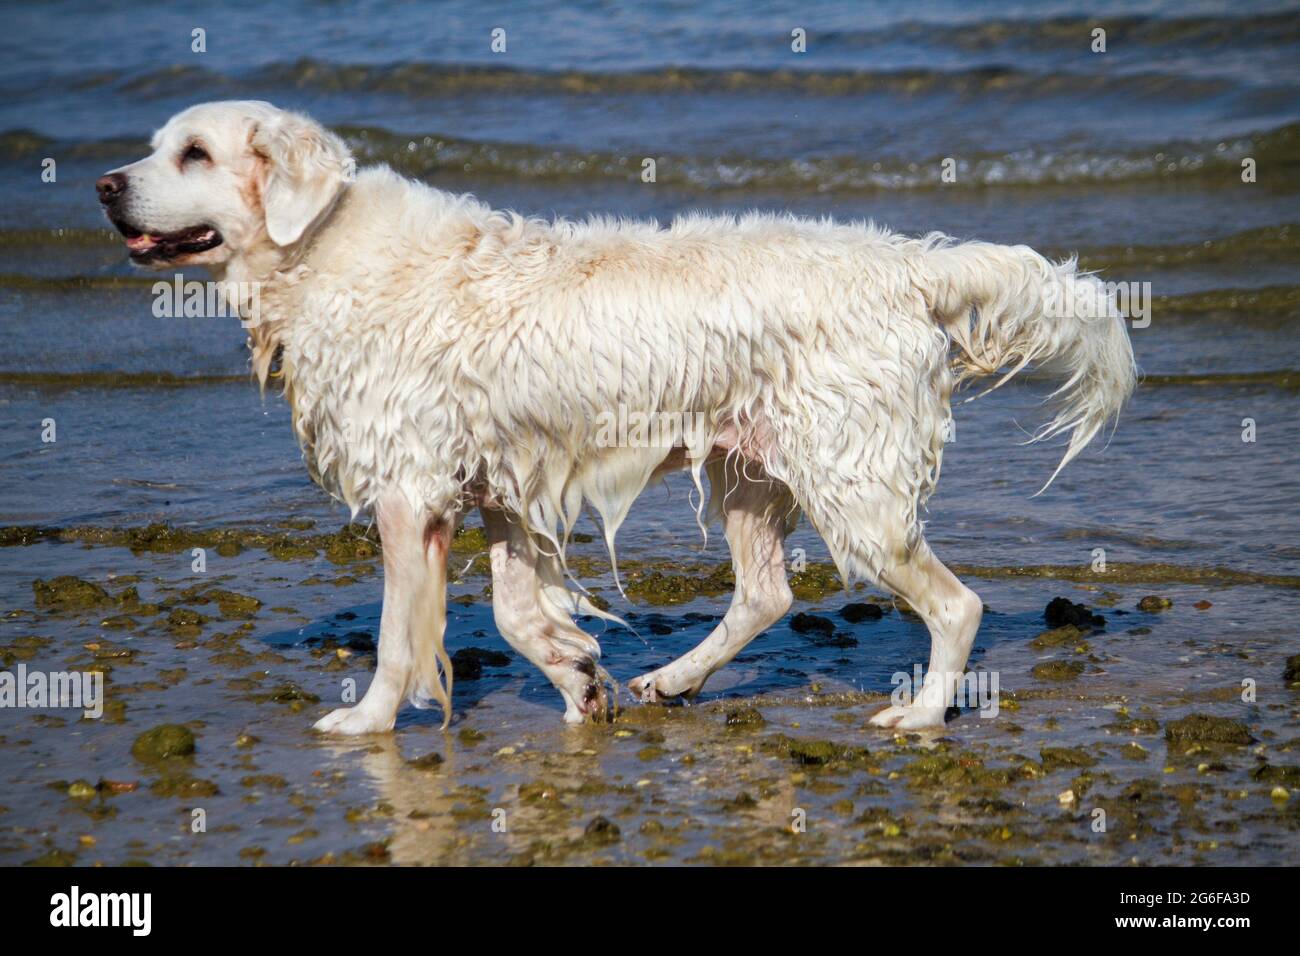 Vista de un lindo perro blanco mojado jugando en el agua. Foto de stock